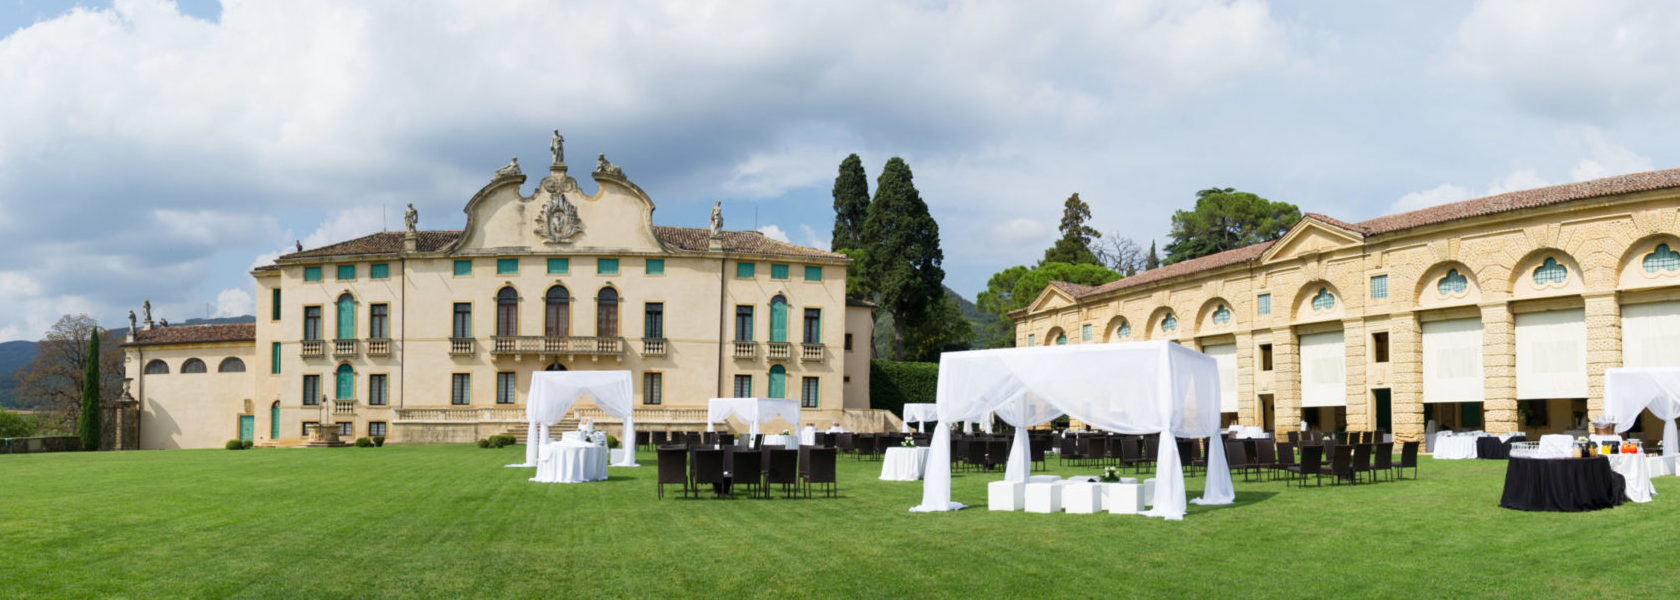 Allestimento per cerimonia con sedie e baldacchini sul Prato, di fronte la Facciata e la Barchessa della Villa di Monturglio.